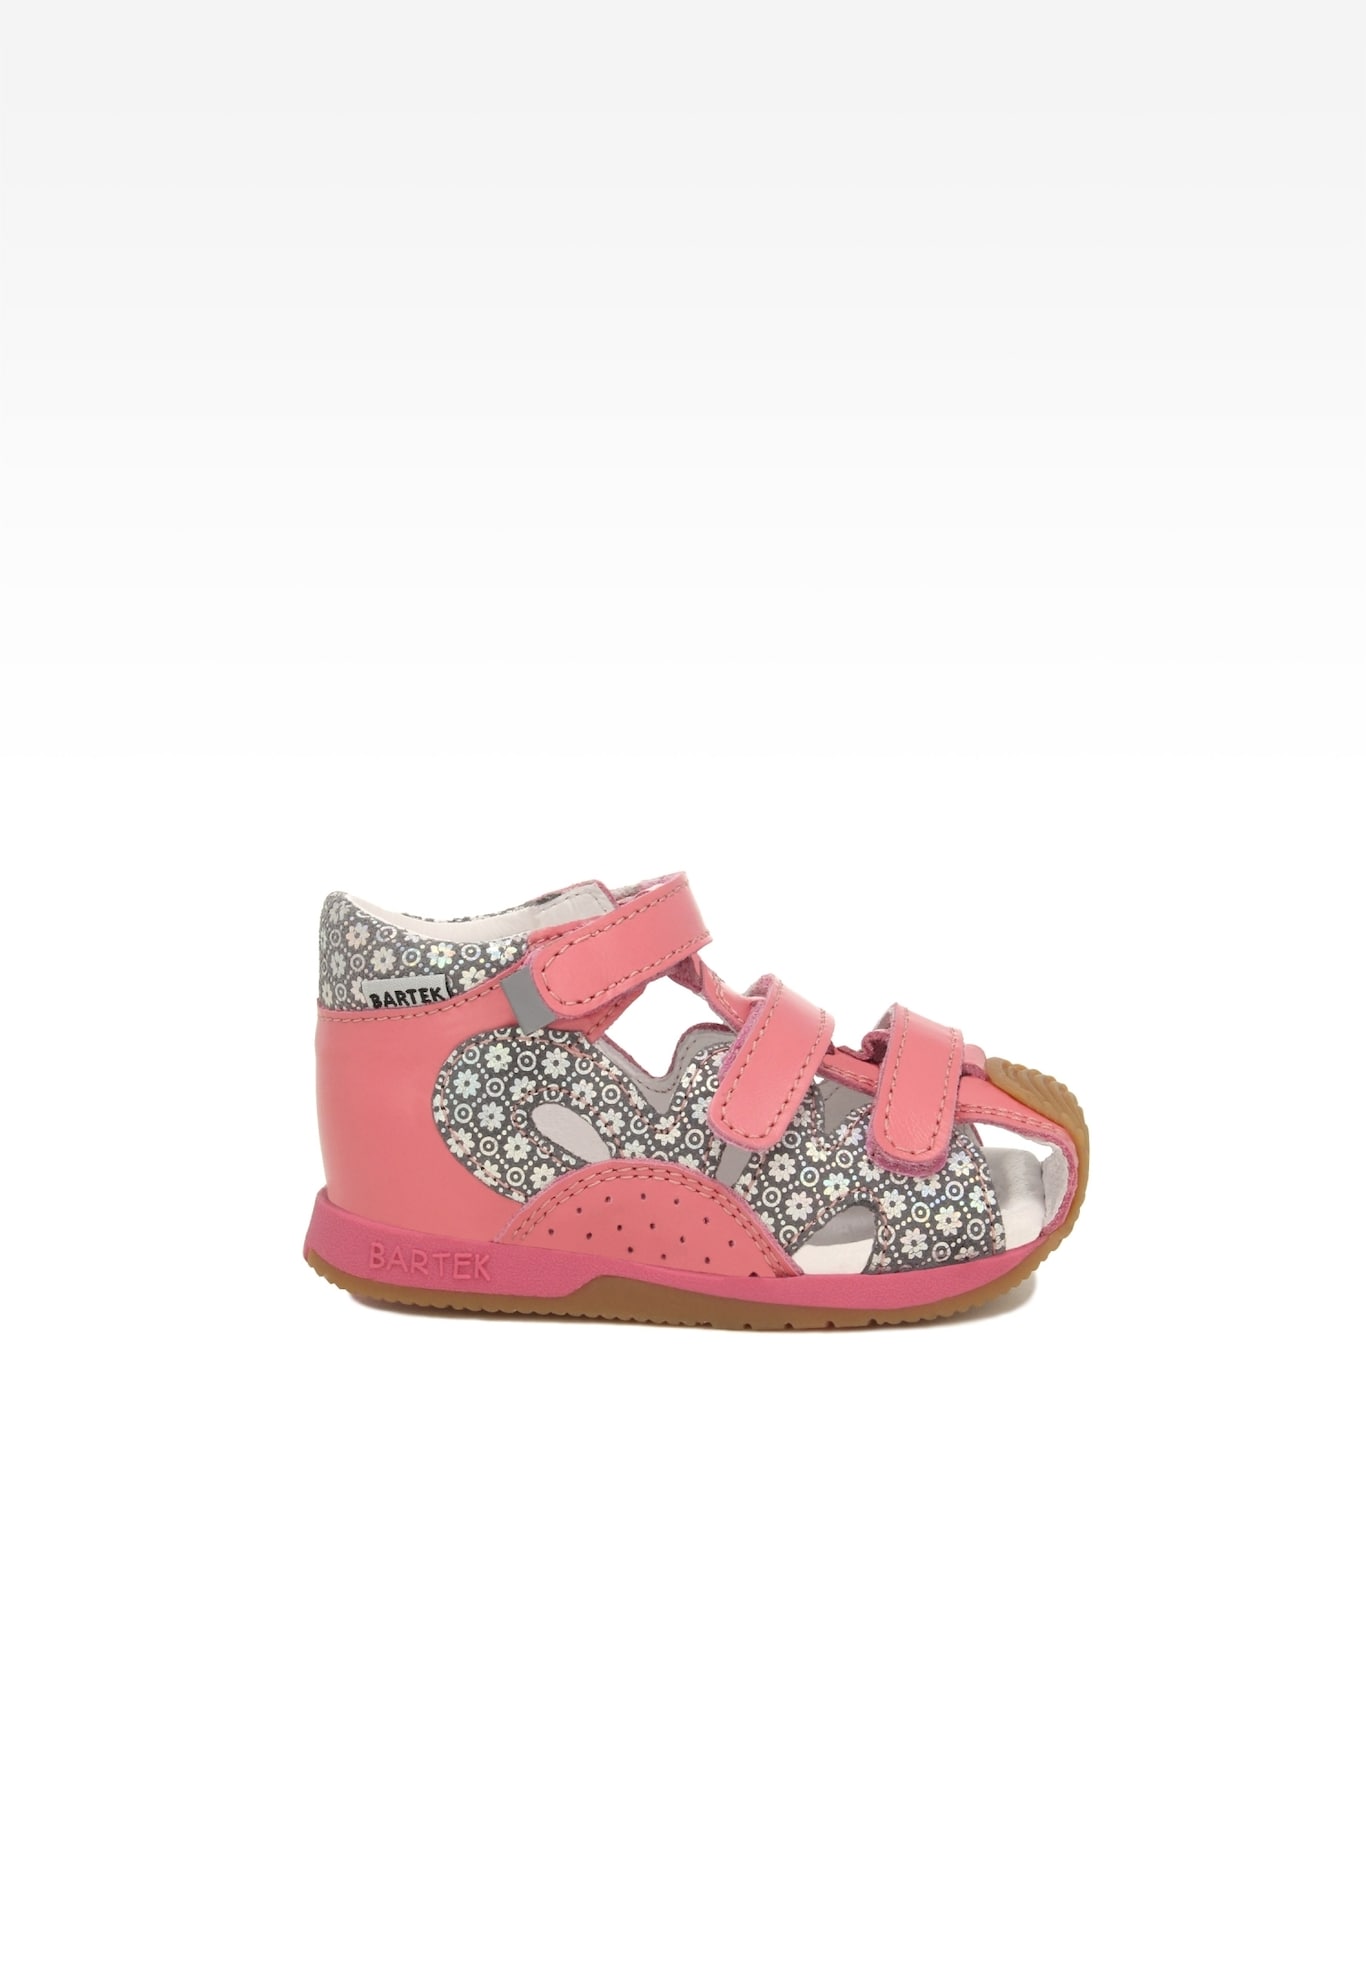 Sandały BARTEK 81021-008, dla dziewcząt, różowo-szary